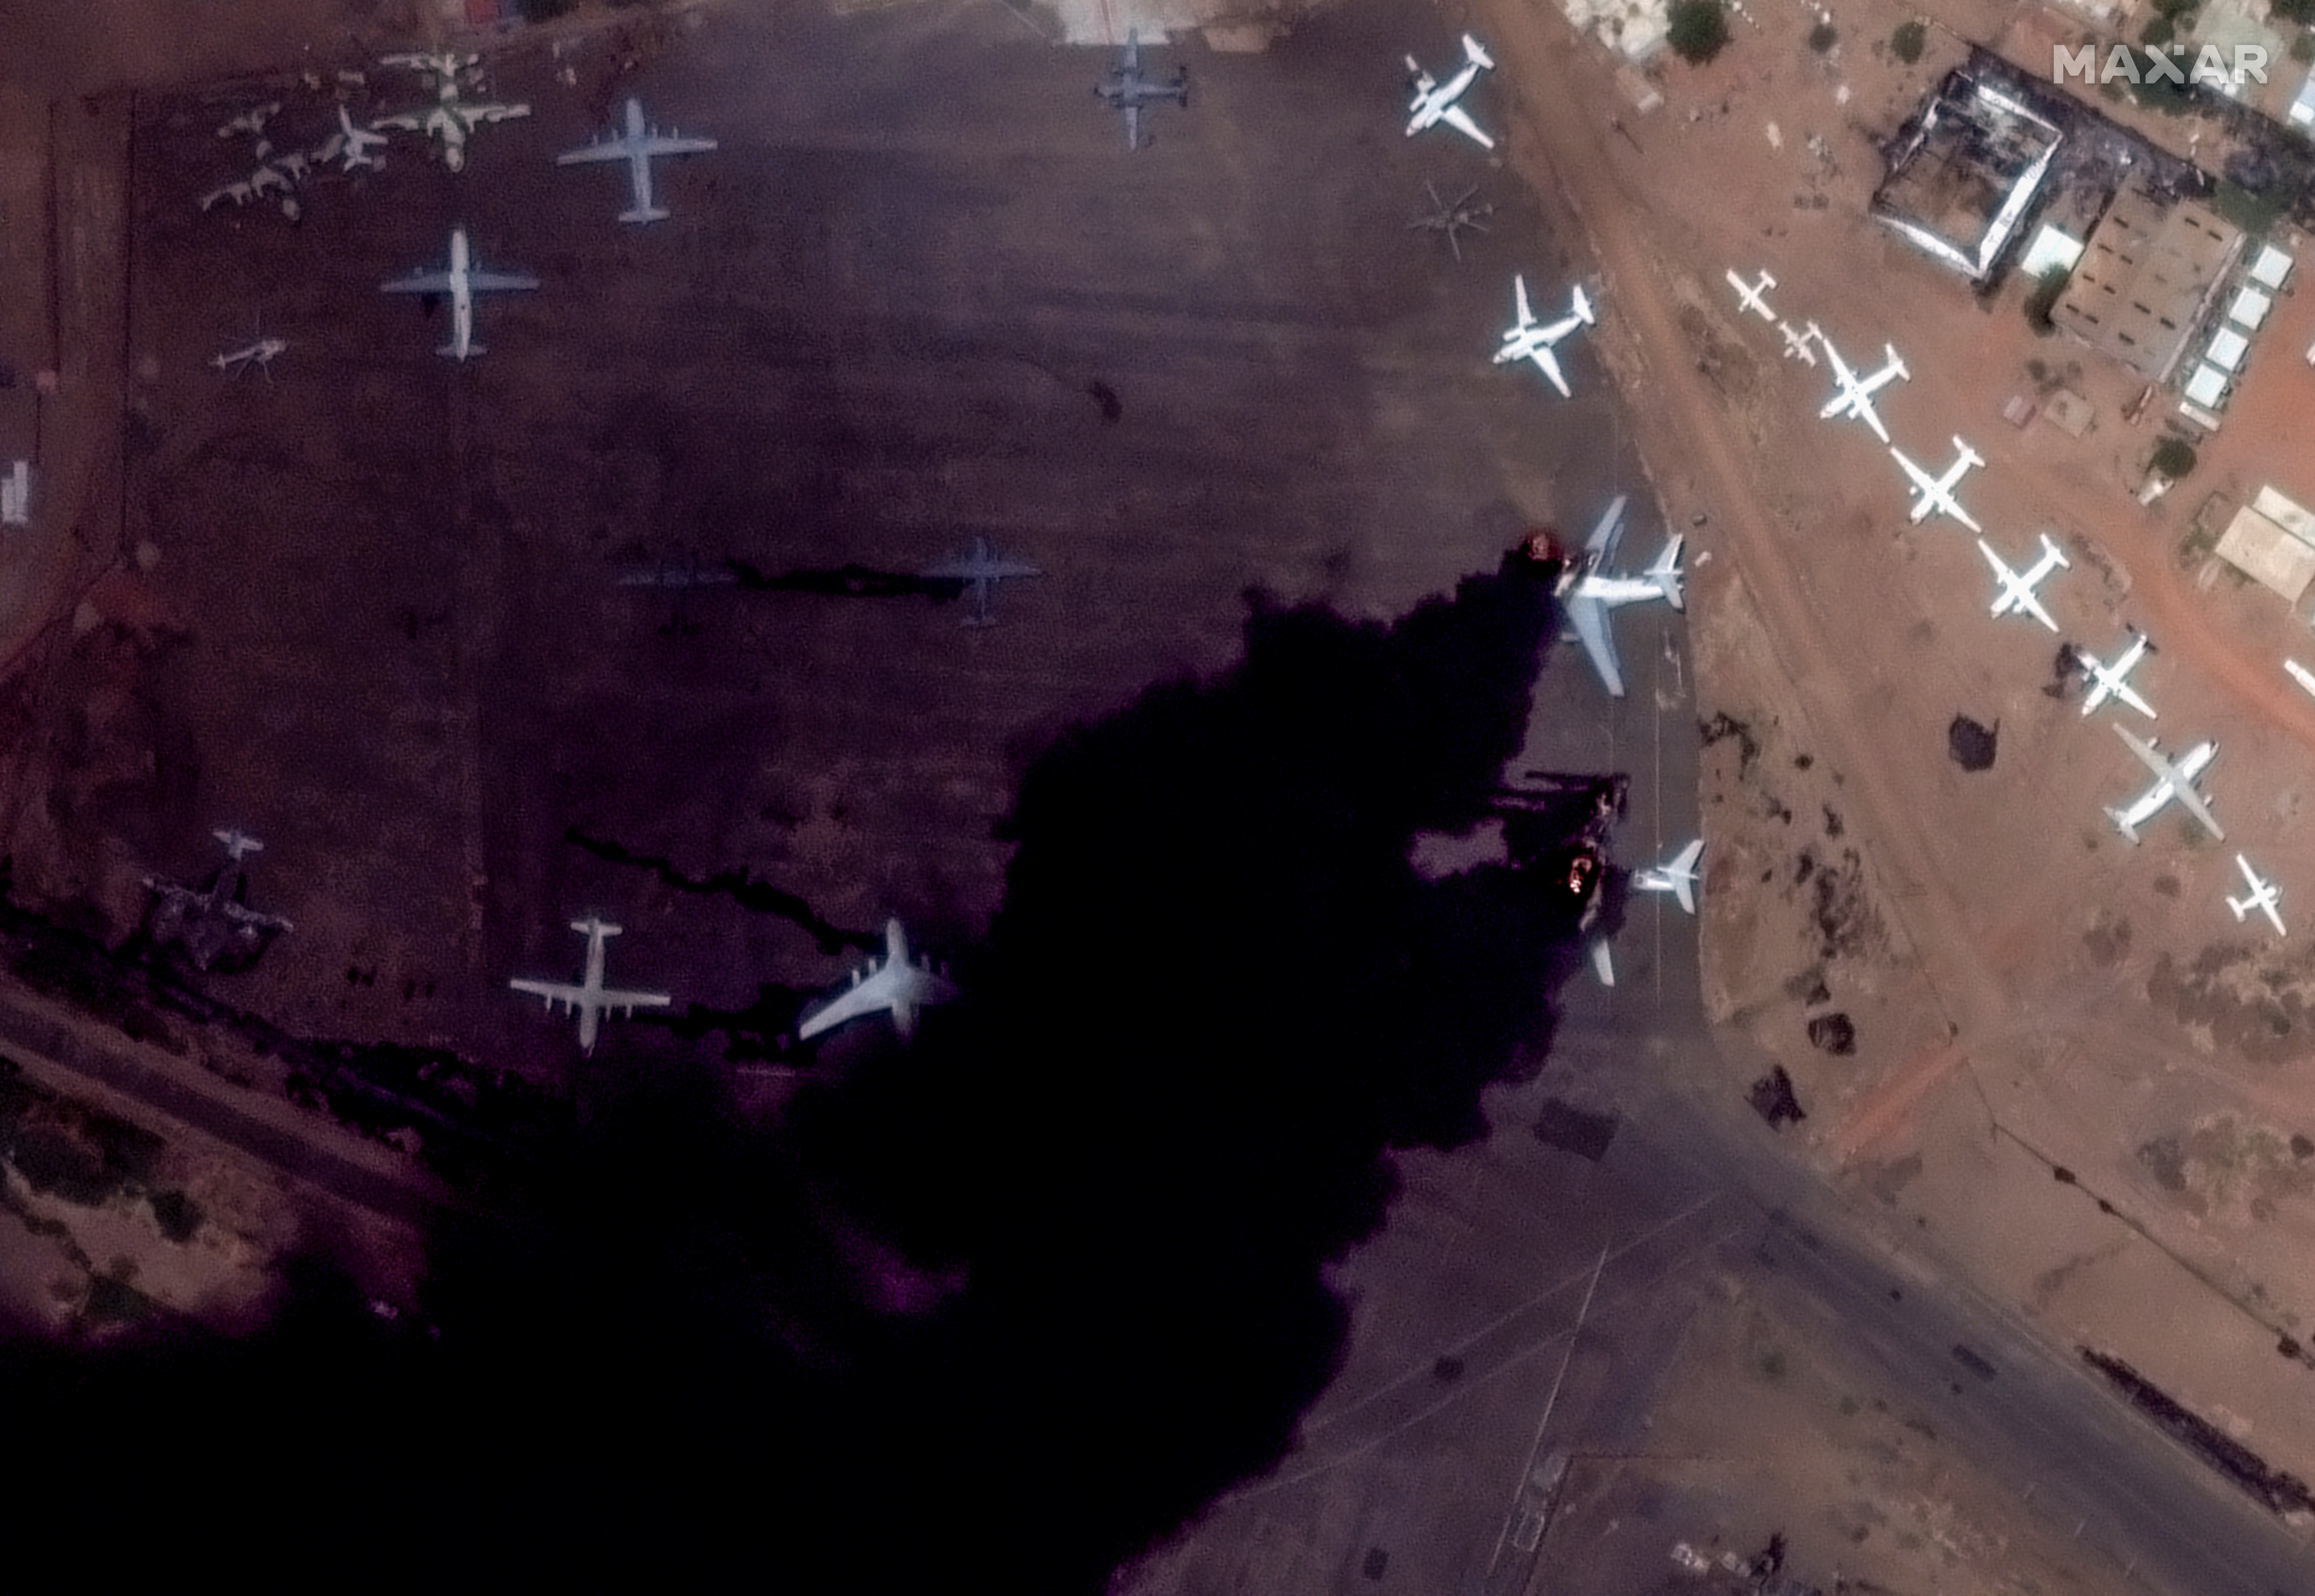 Los distintos frentes en conflicto han mantenido las hostilidades en el Aeropuerto de Jartum. (Maxar Technologies/Handout vía REUTERS)